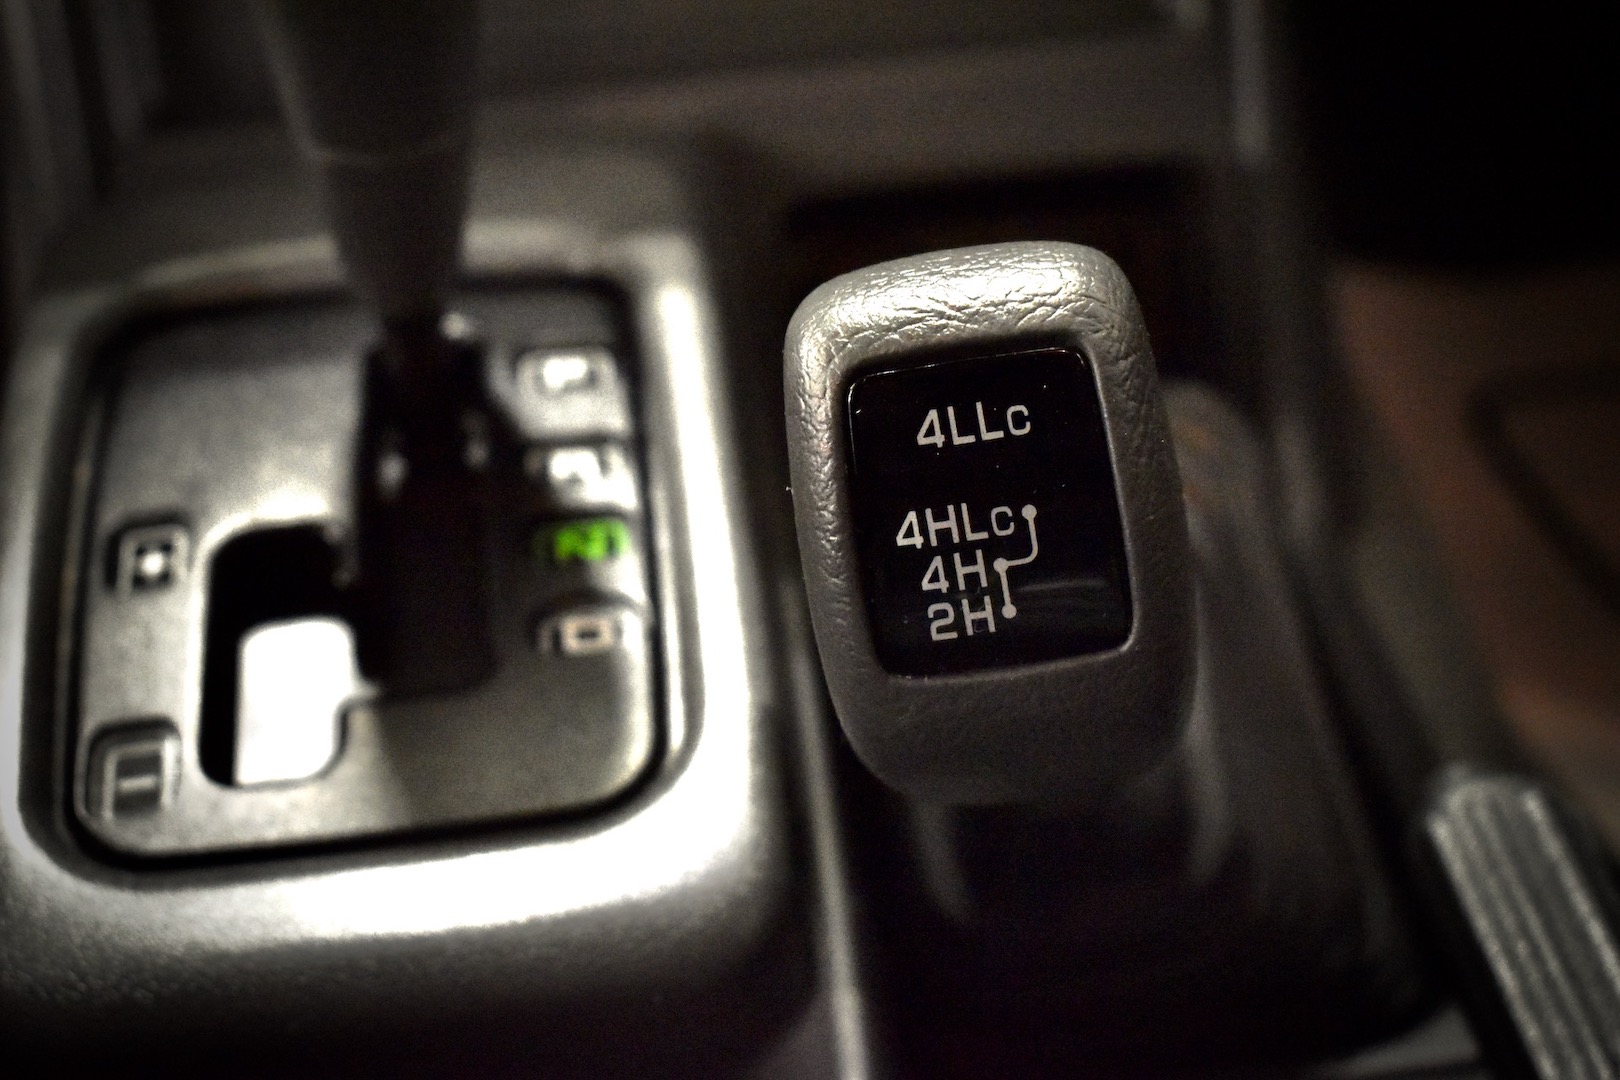 1997 Mitsubishi Pajero Evolution transfer case shift knob